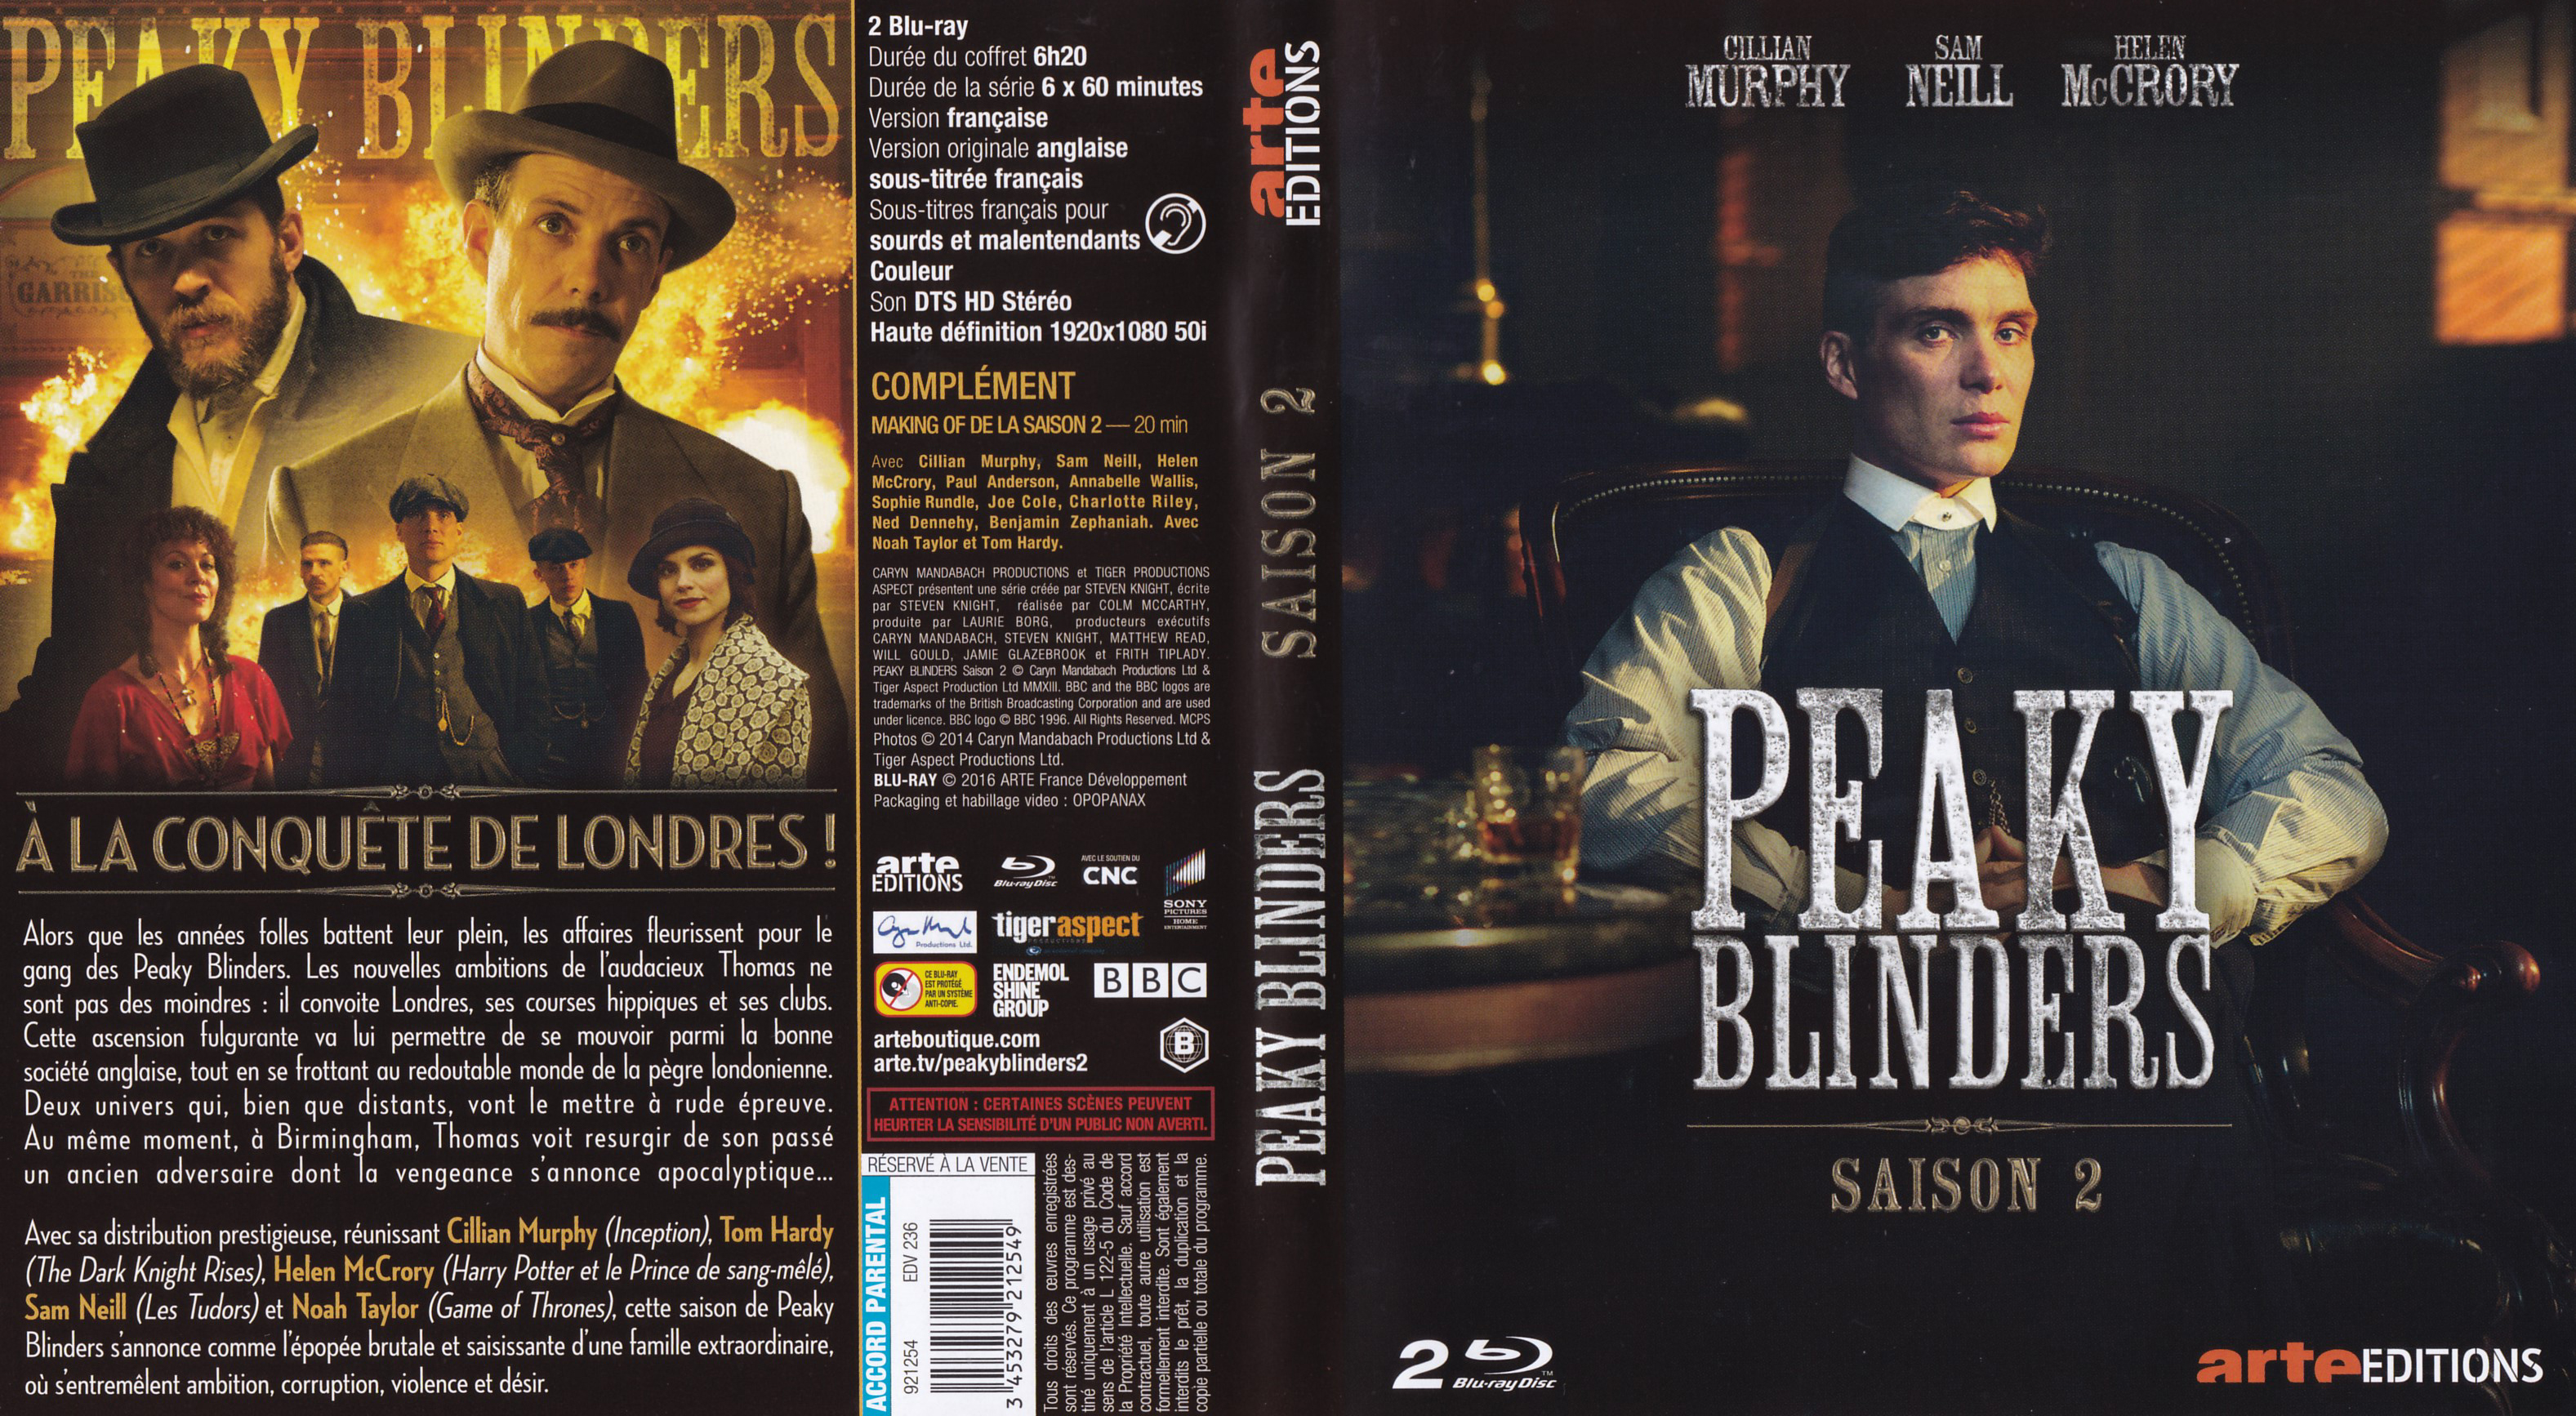 Jaquette Dvd De Peaky Blinders Saison 2 Blu Ray Cinéma Passion 